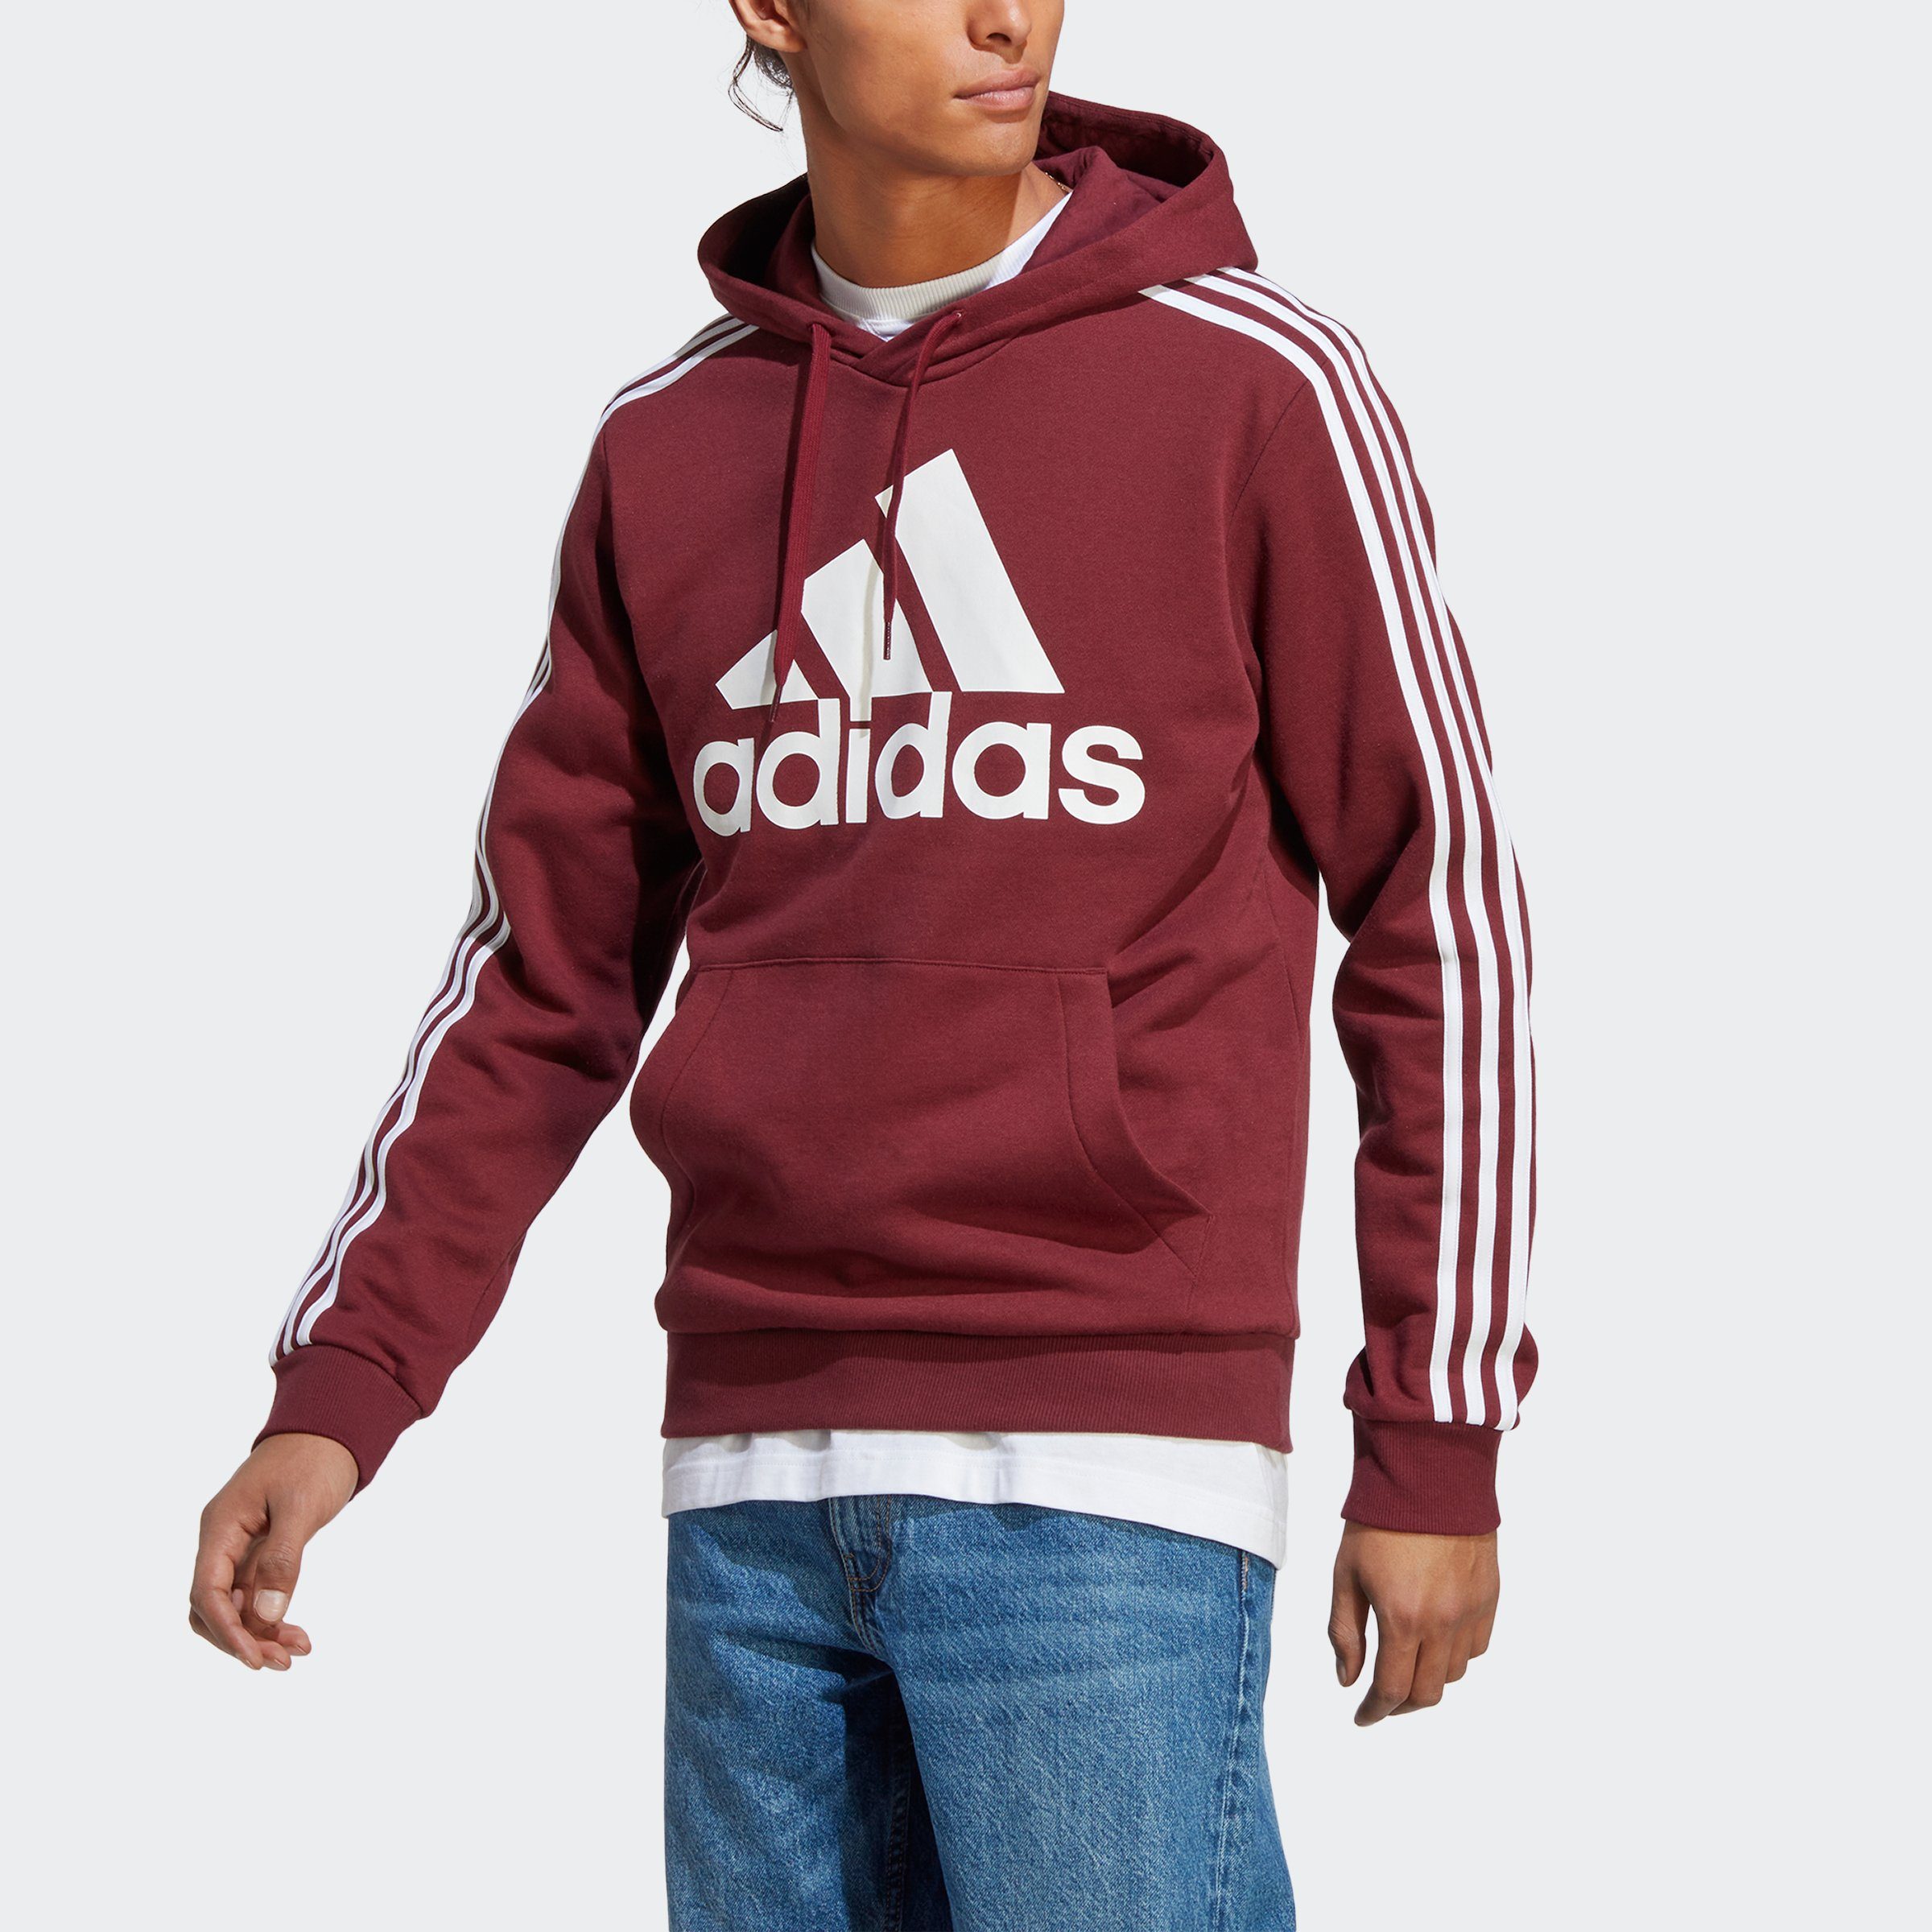 3STREIFEN adidas FLEECE HOODIE ESSENTIALS LOGO Sportswear Sweatshirt